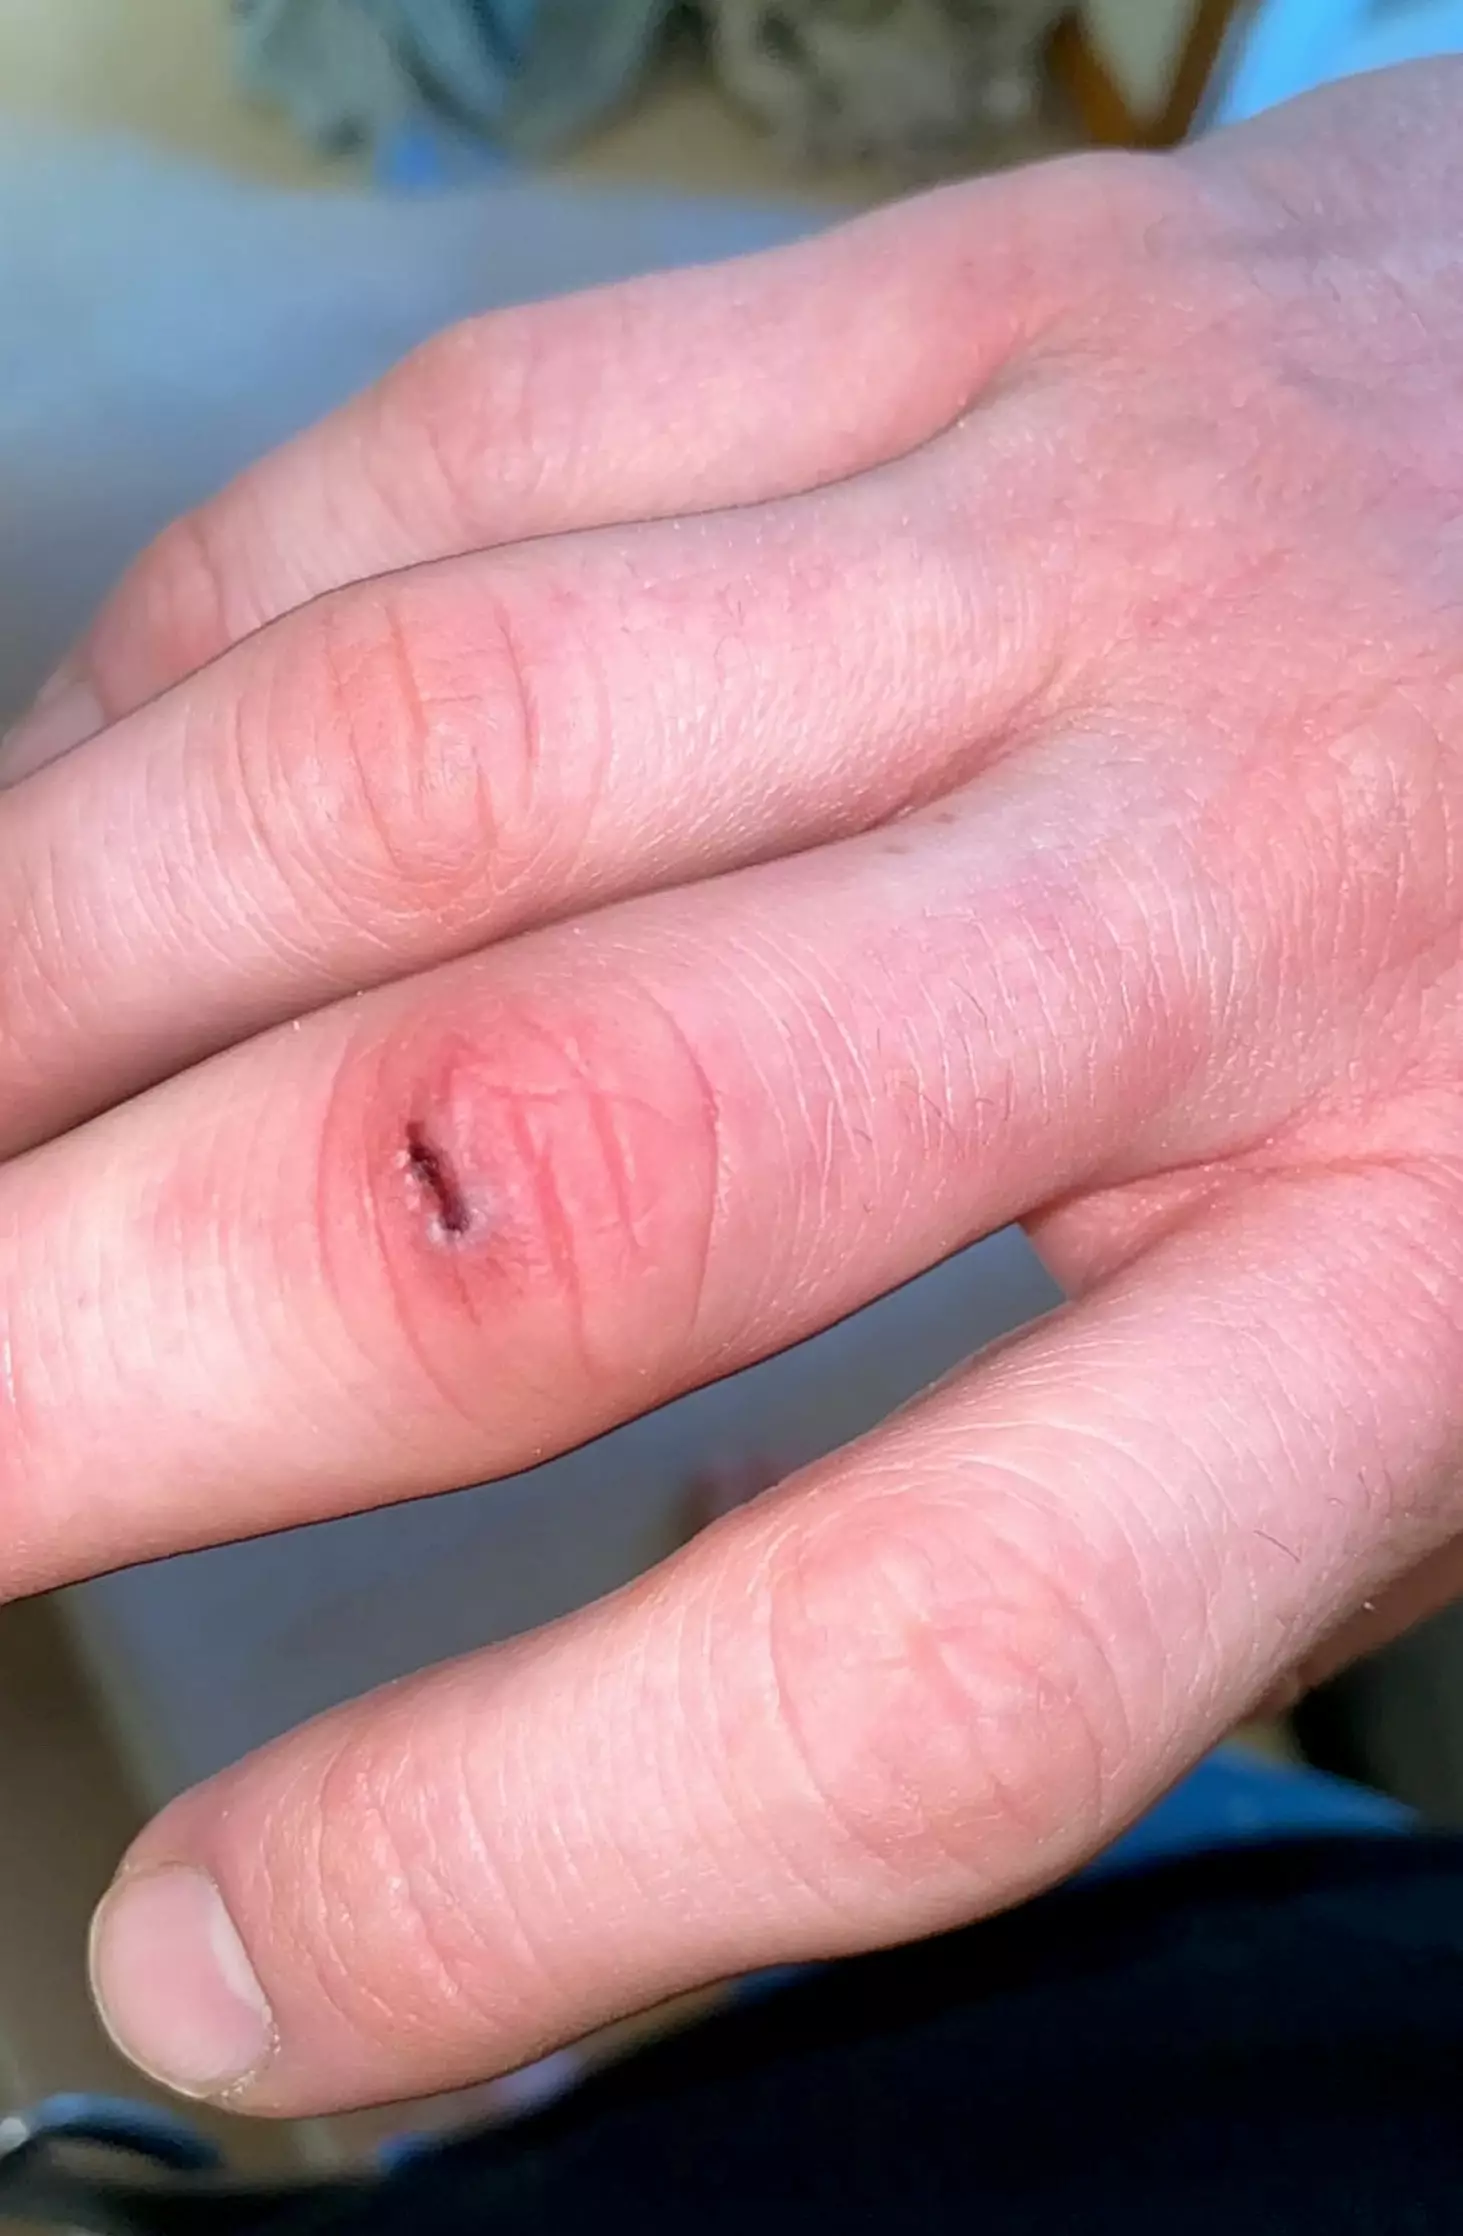 The initial cut on Steve's finger.